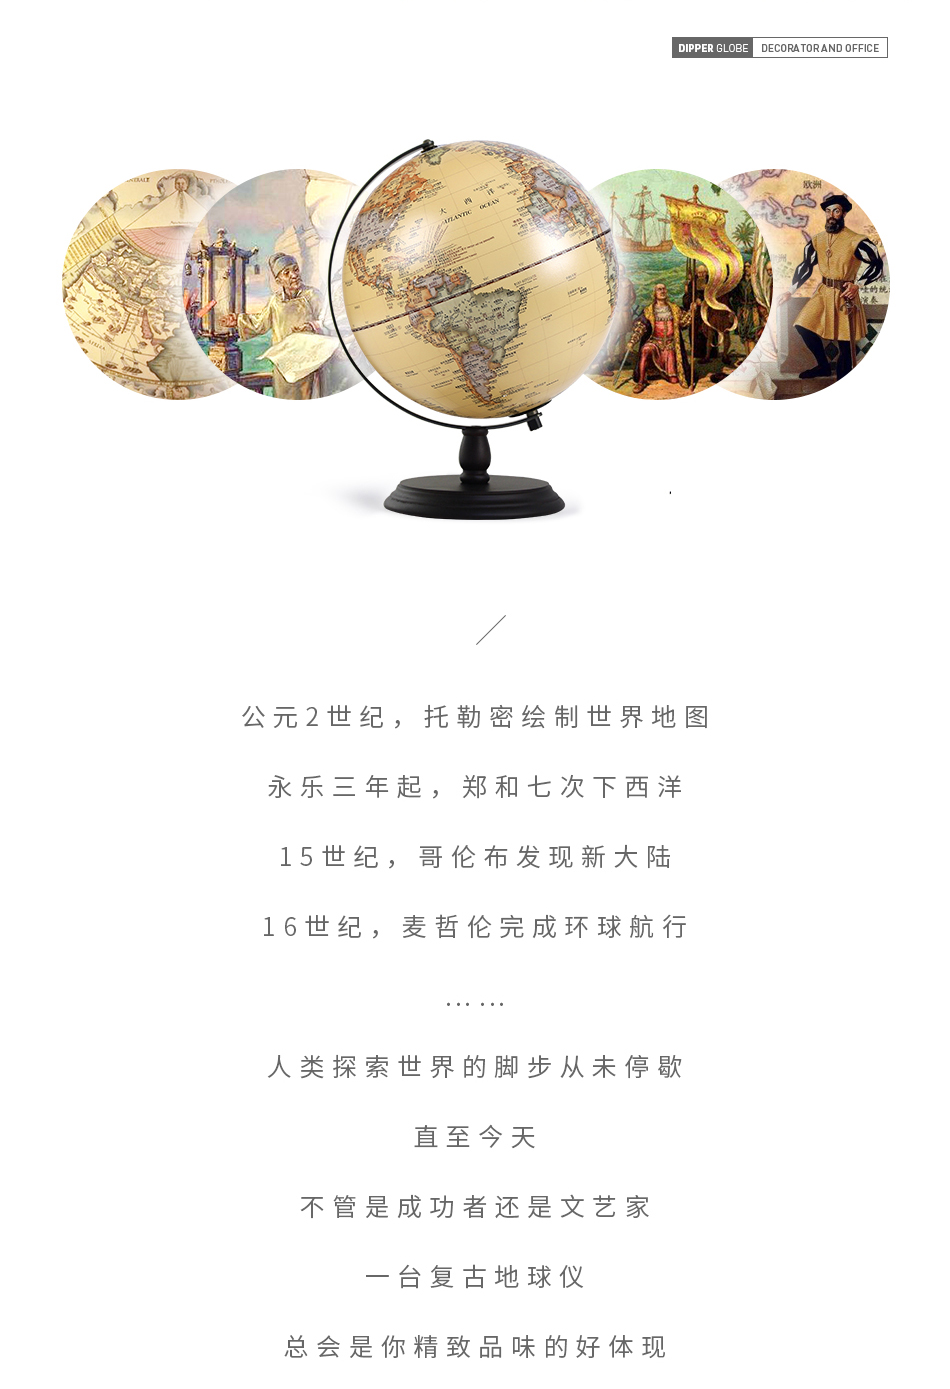 米乐|米乐·M6(China)官方网站_首页1439